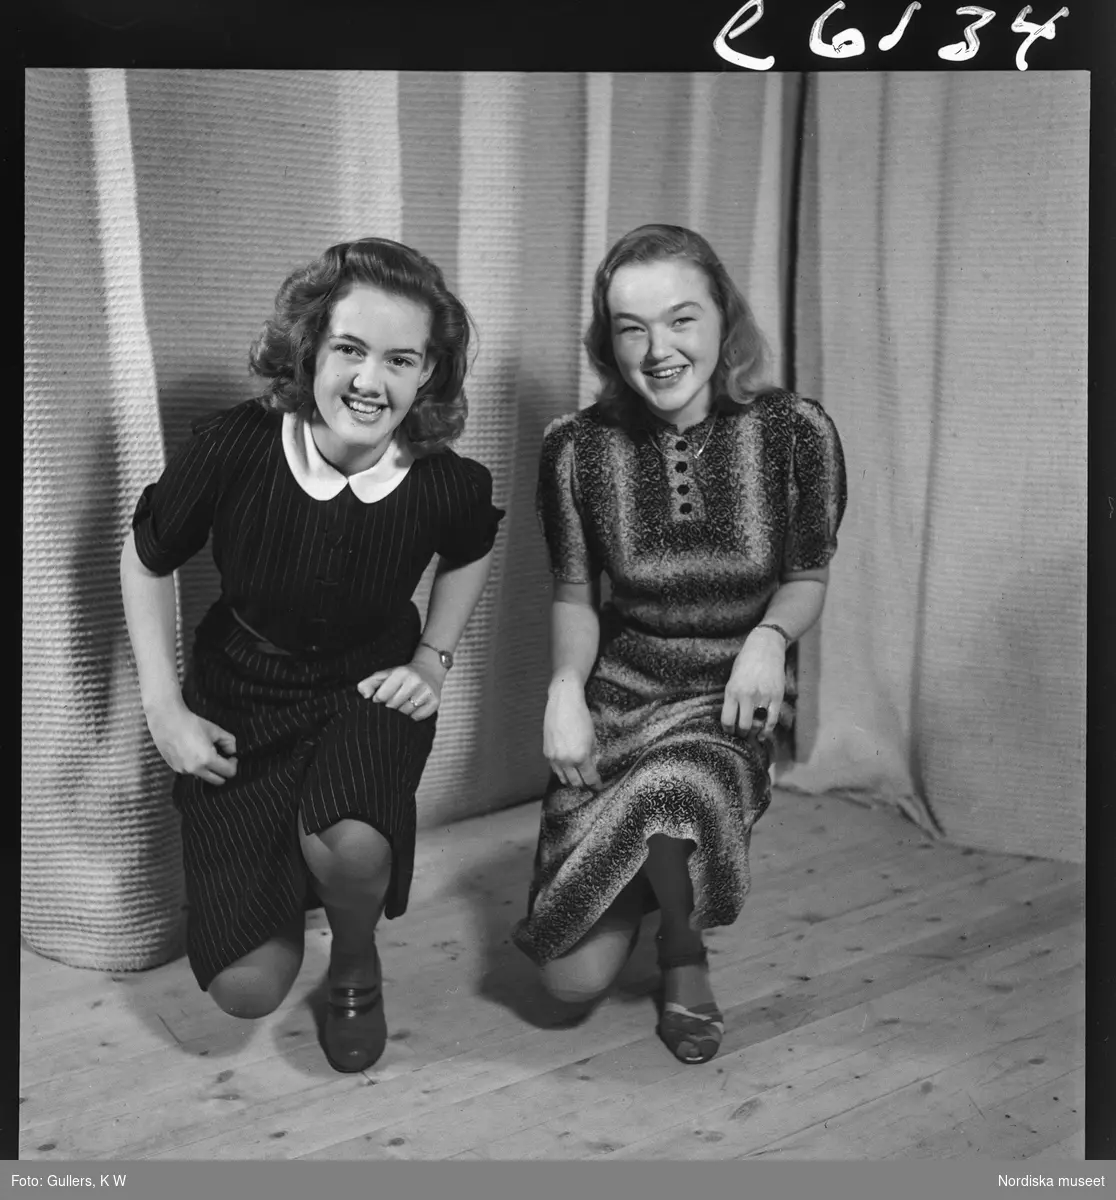 505 Wityansky Teaterskola för Allers. Två kvinnliga teaterelever poserar på knä.